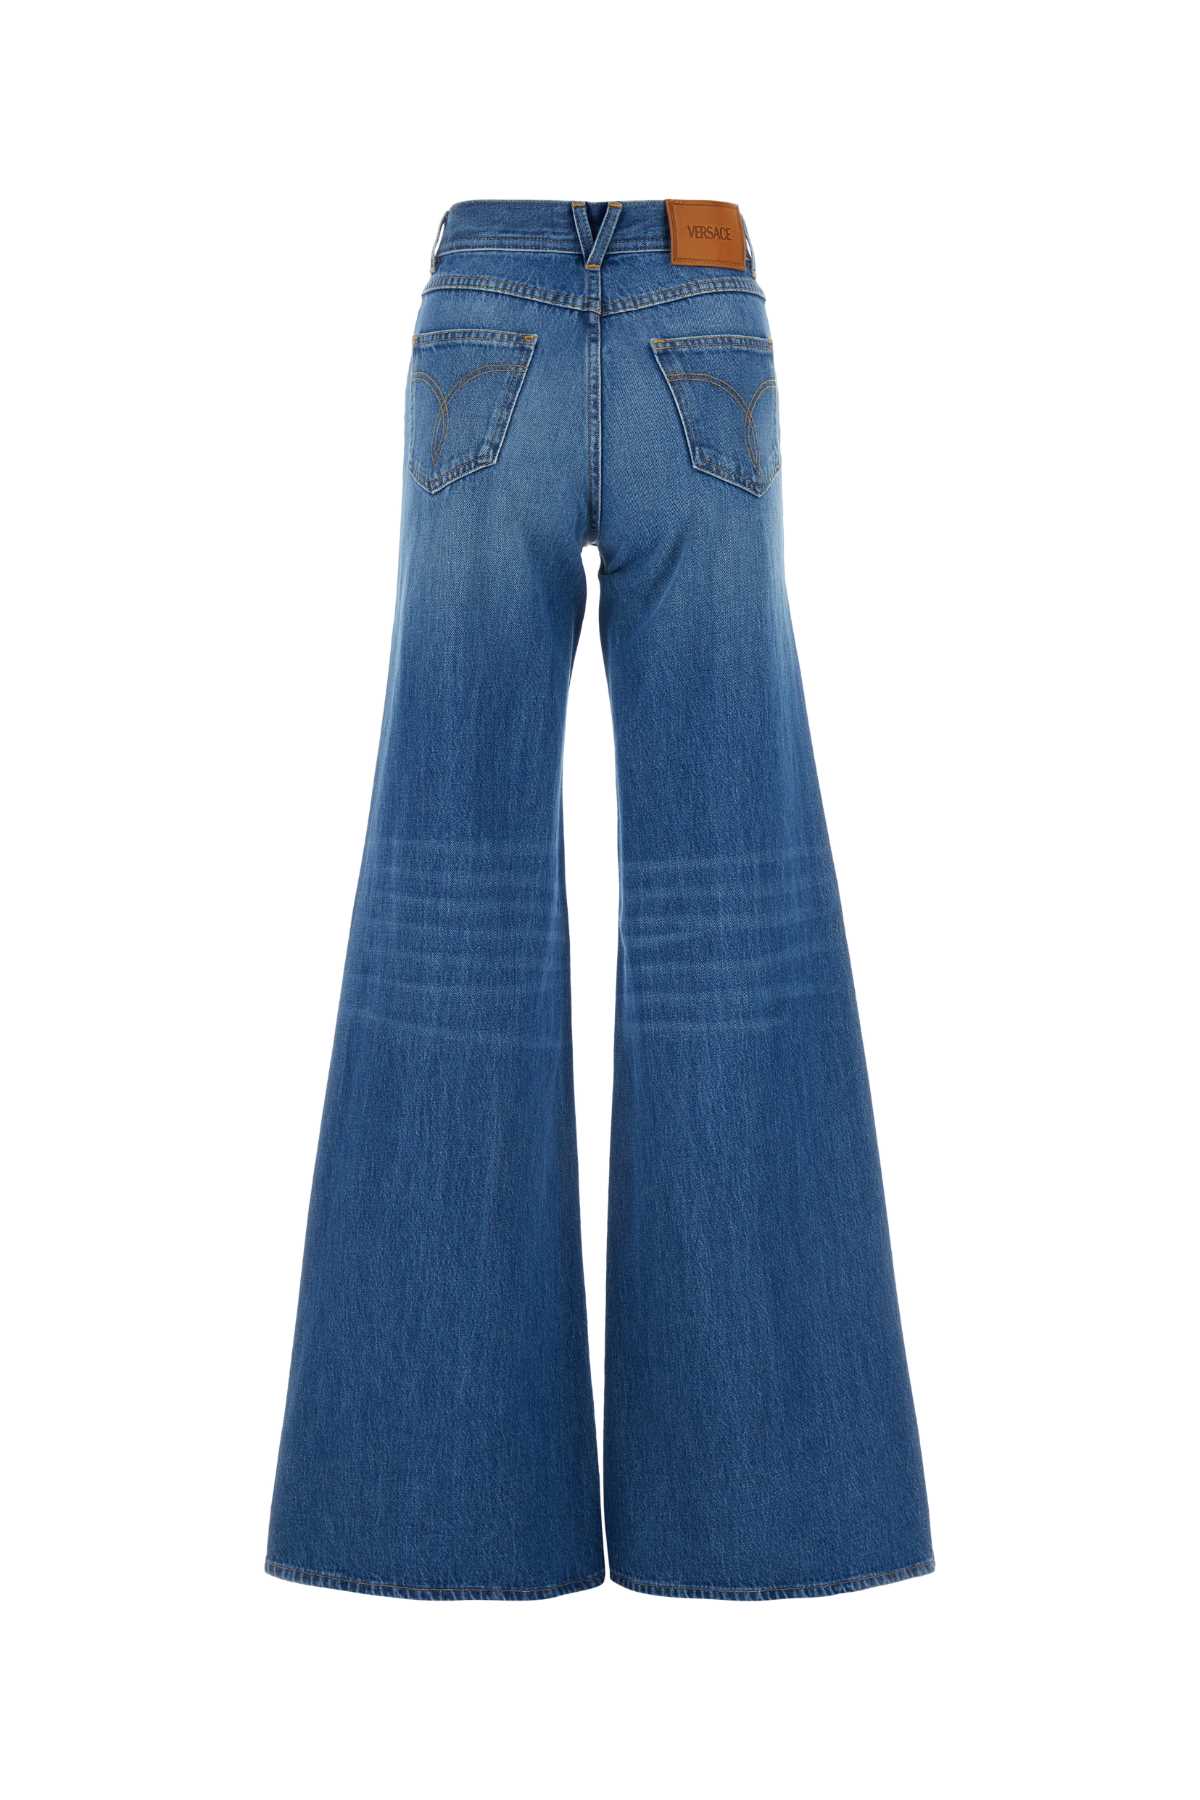 Versace Denim Jeans In Mediumblue